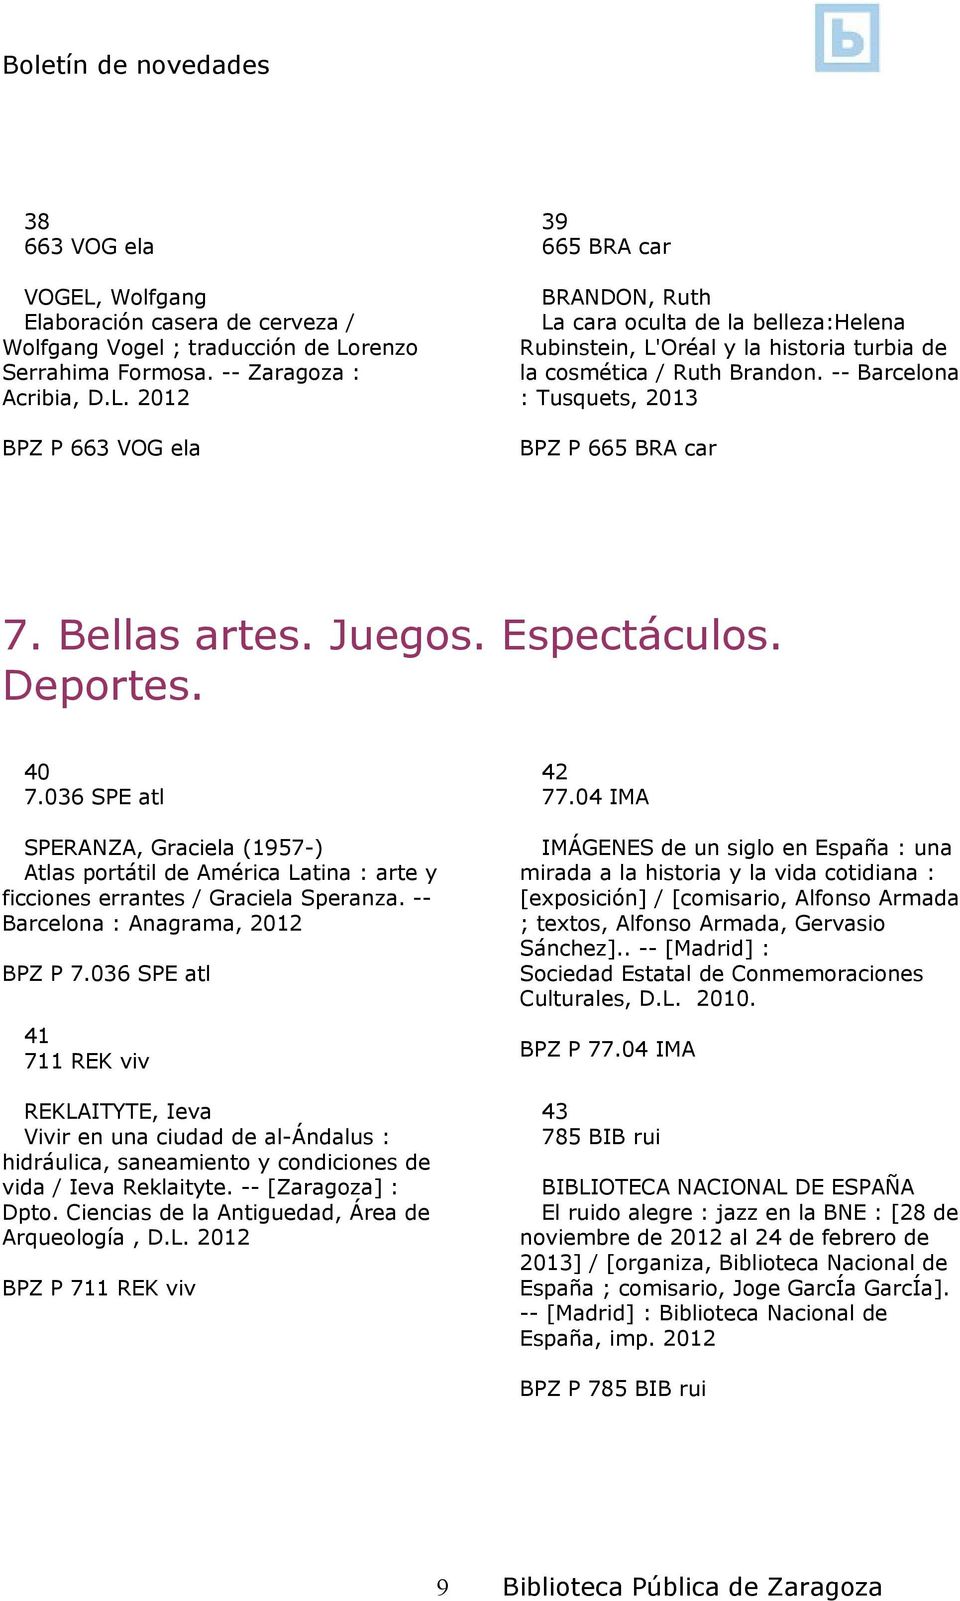 036 SPE atl SPERANZA, Graciela (1957-) Atlas portátil de América Latina : arte y ficciones errantes / Graciela Speranza. -- Barcelona : Anagrama, 2012 BPZ P 7.